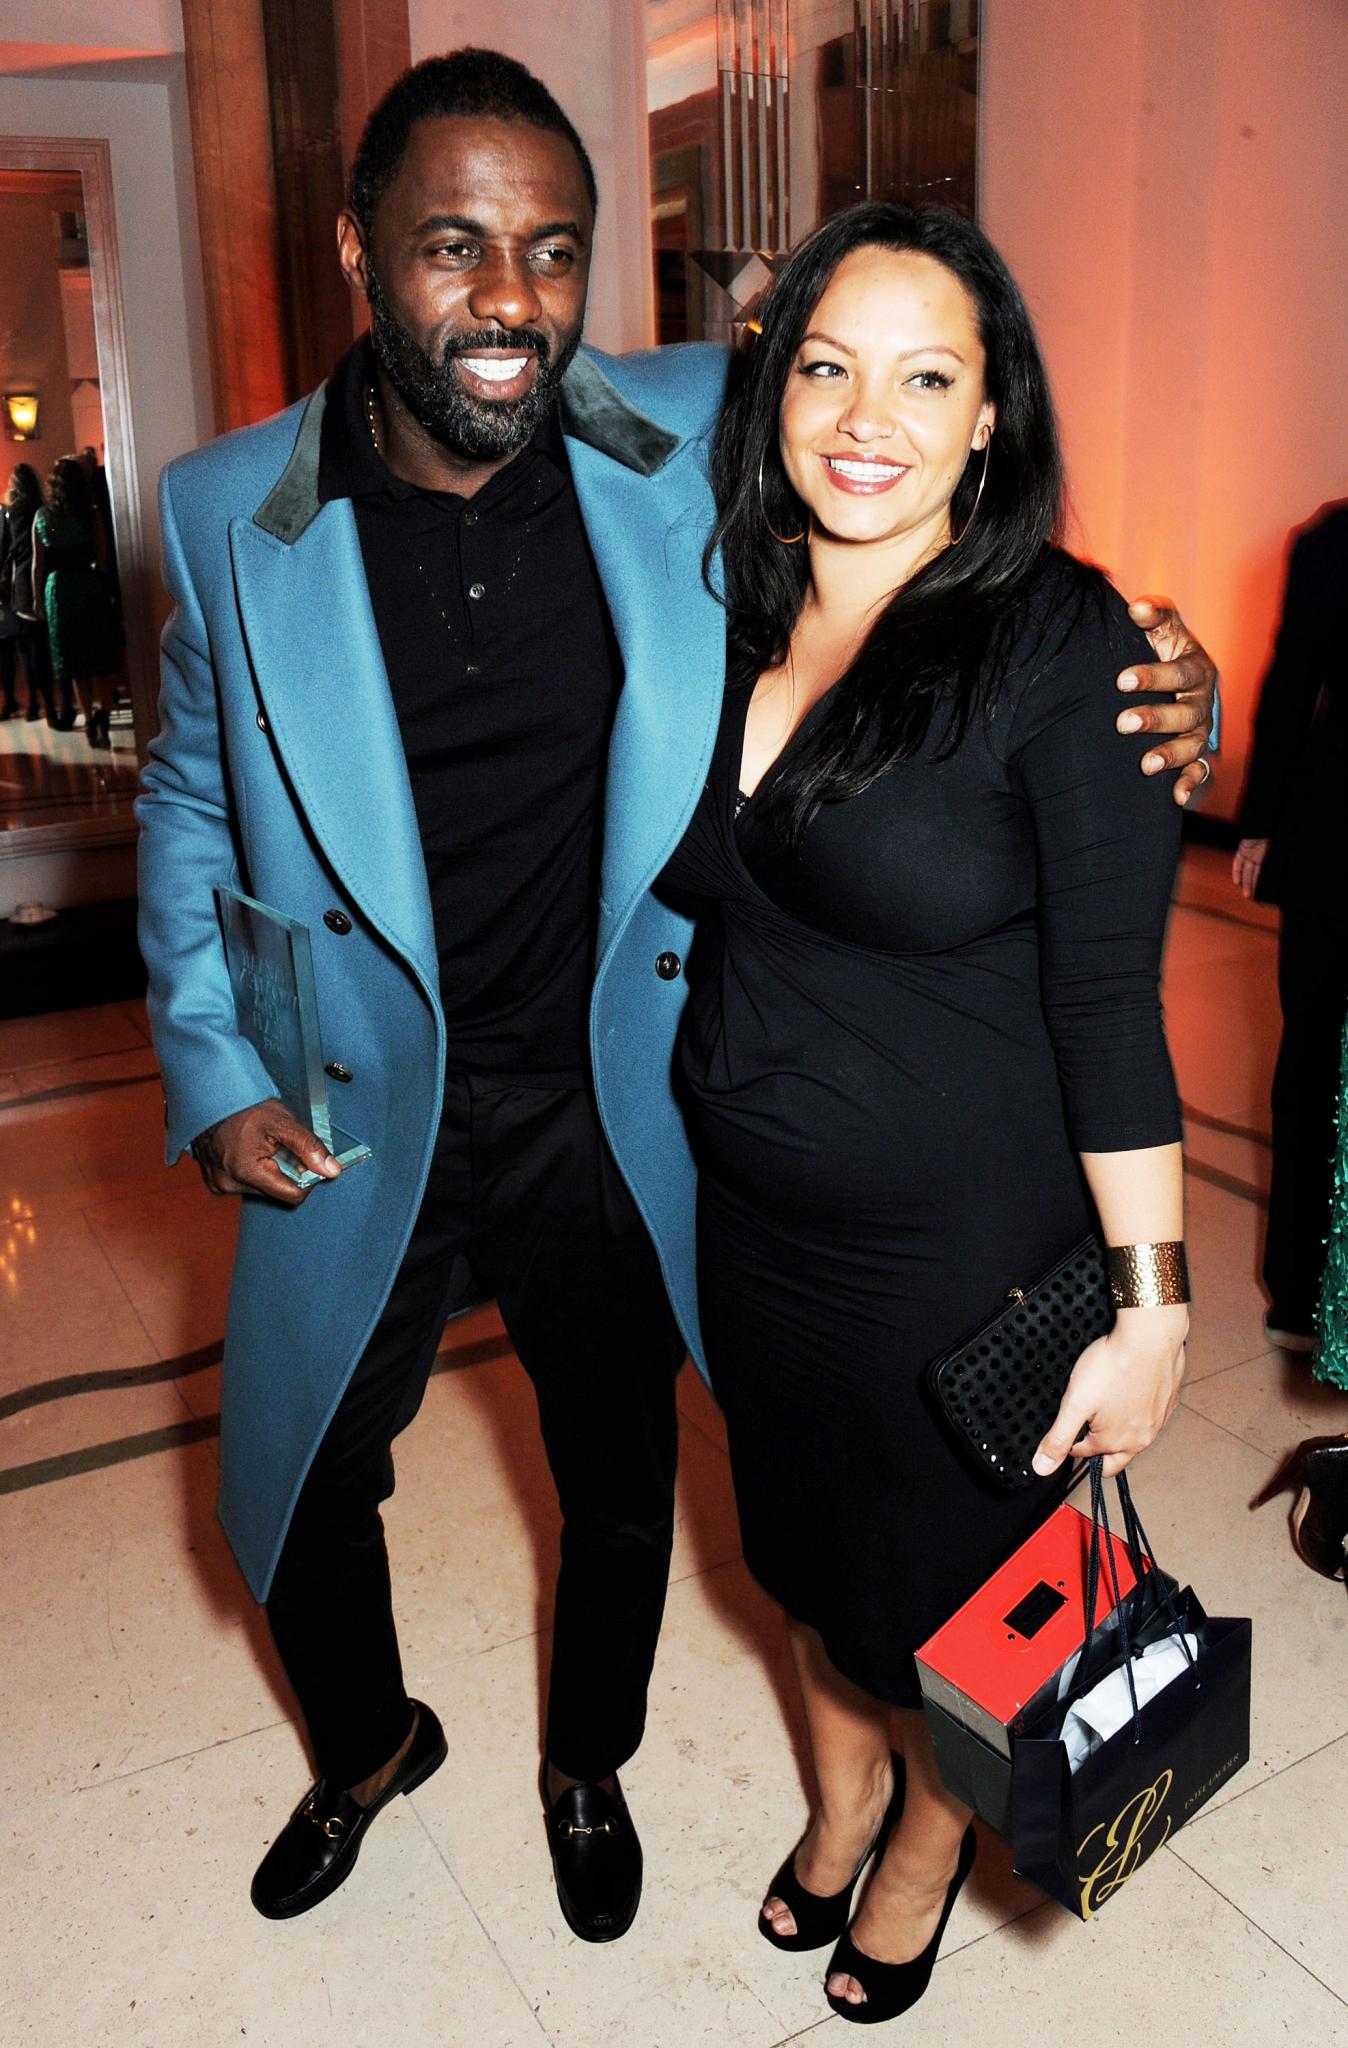 Idris Elba Confirms He's Having a Baby
